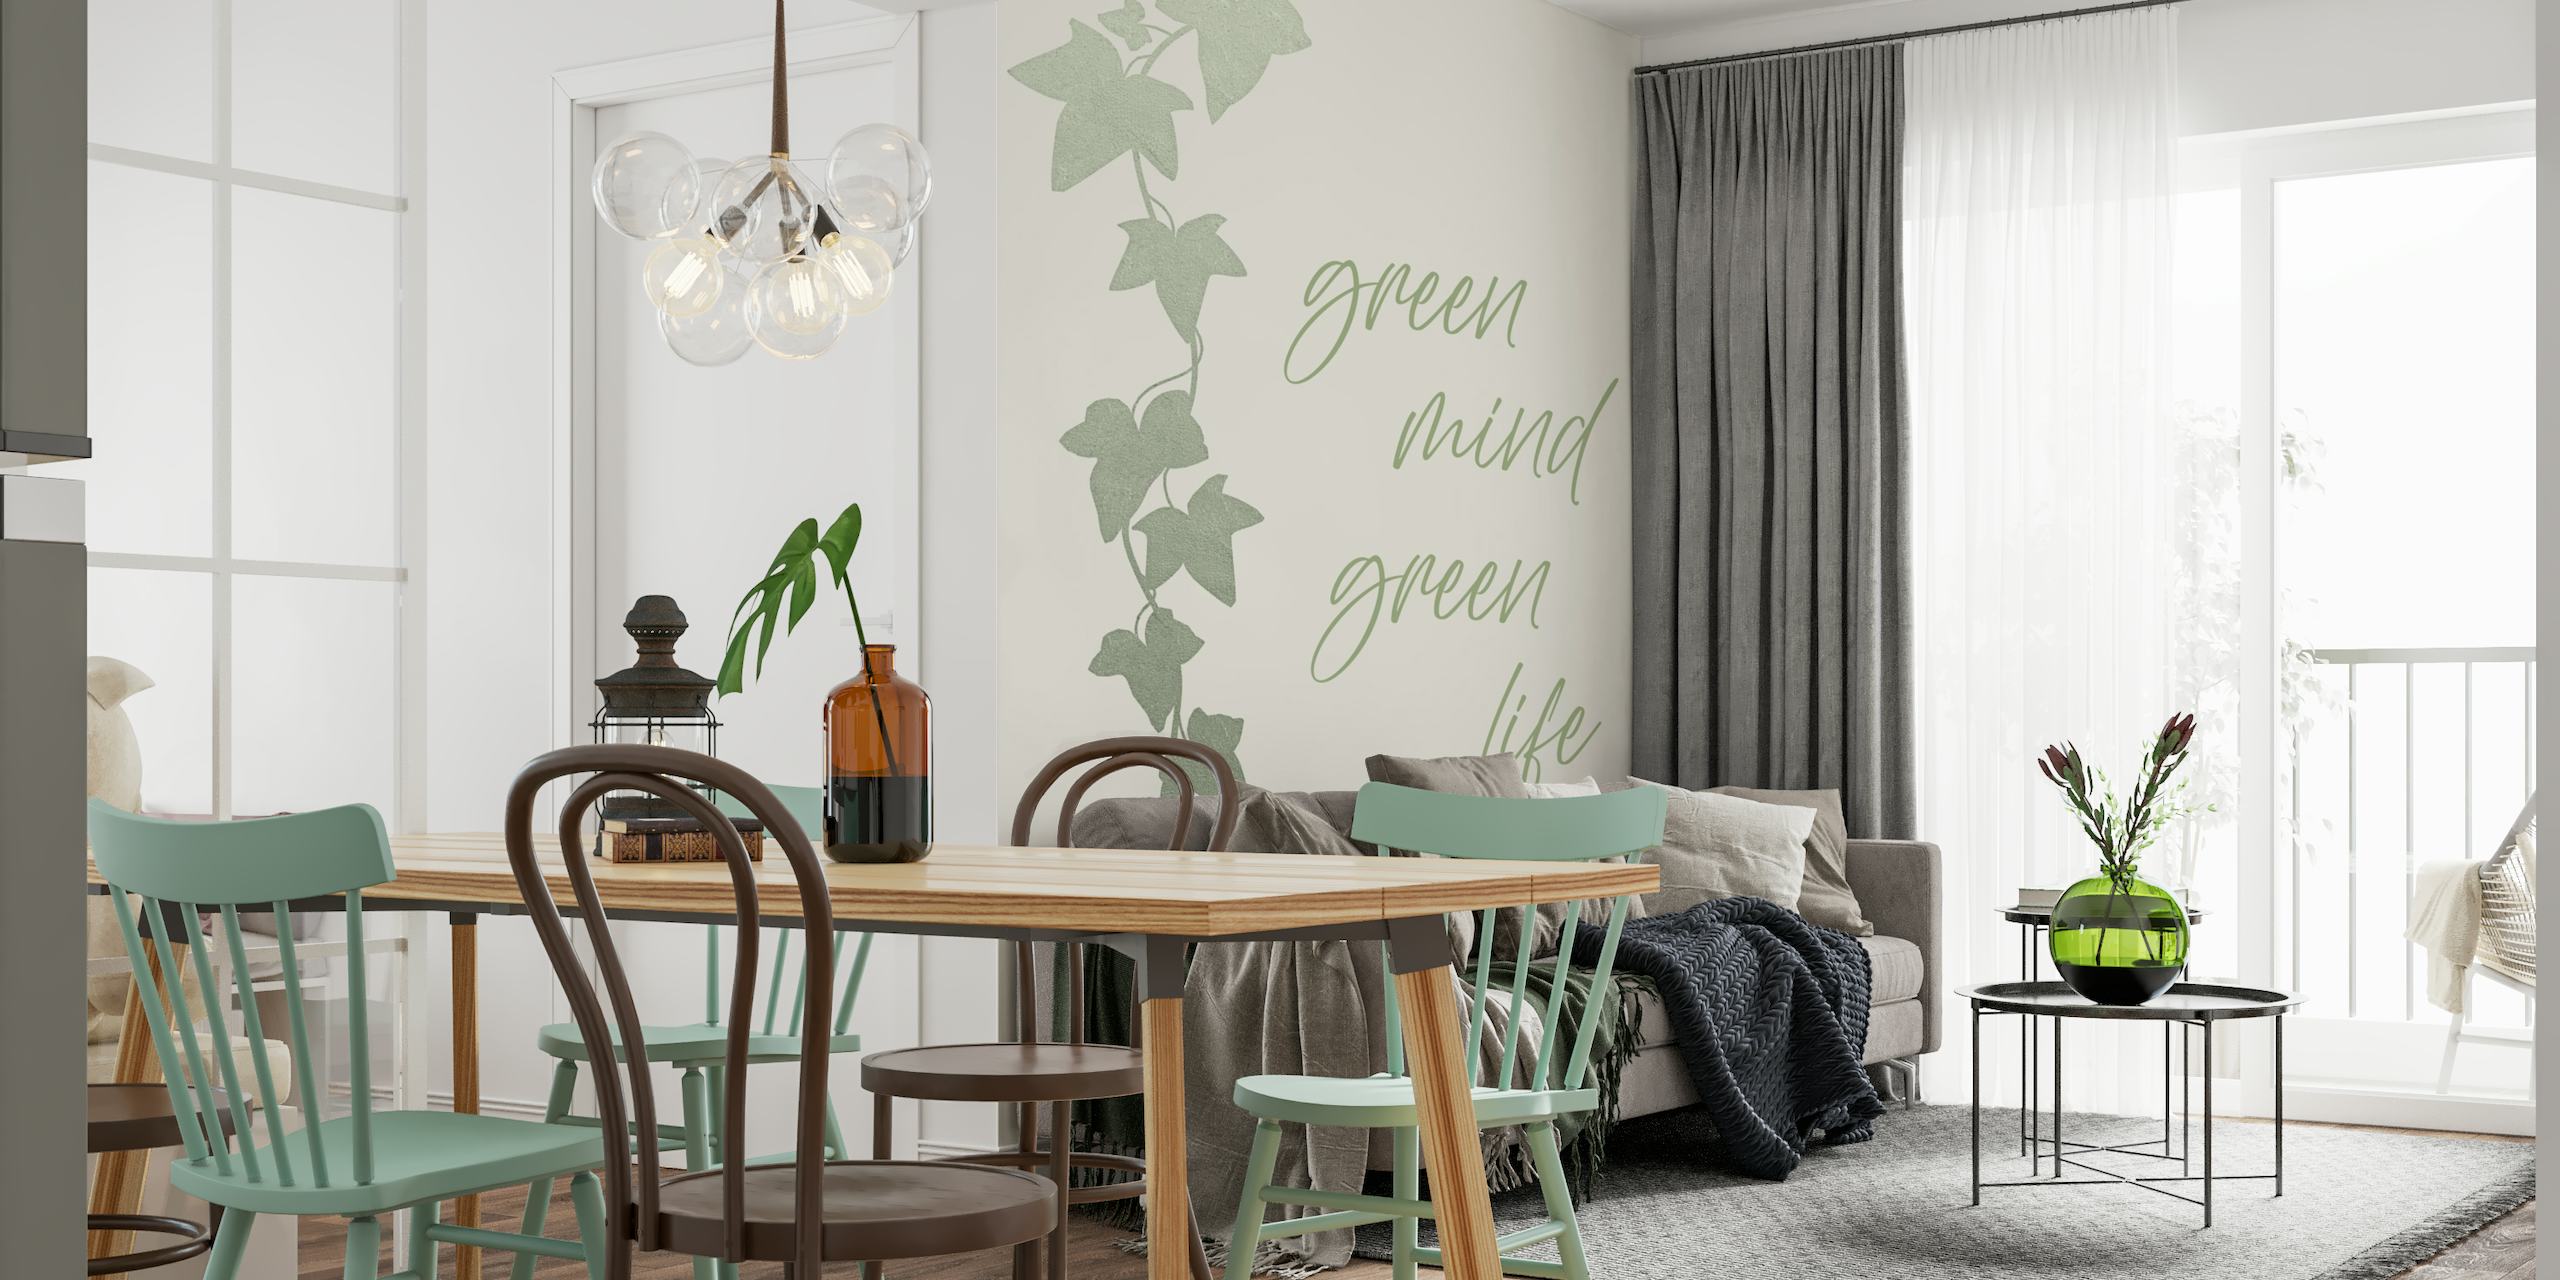 Väggdekor med gröna murgrönalöv med manuset "Green mind - Green life".